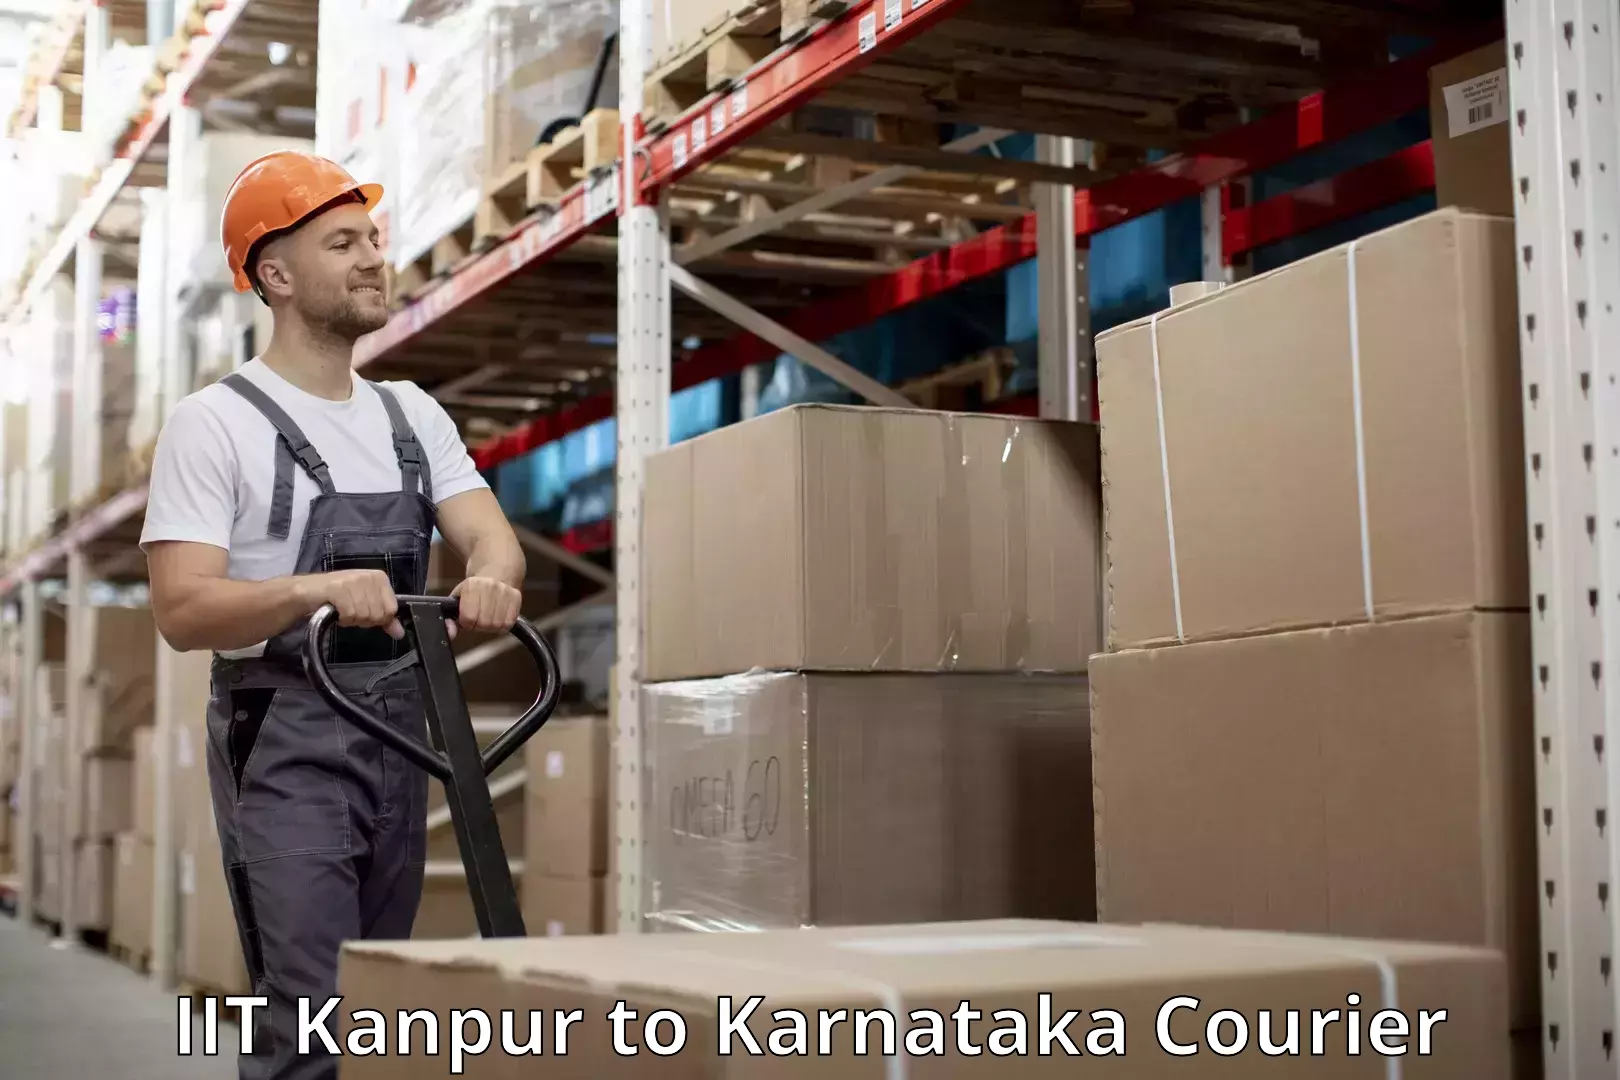 Digital baggage courier IIT Kanpur to Karnataka